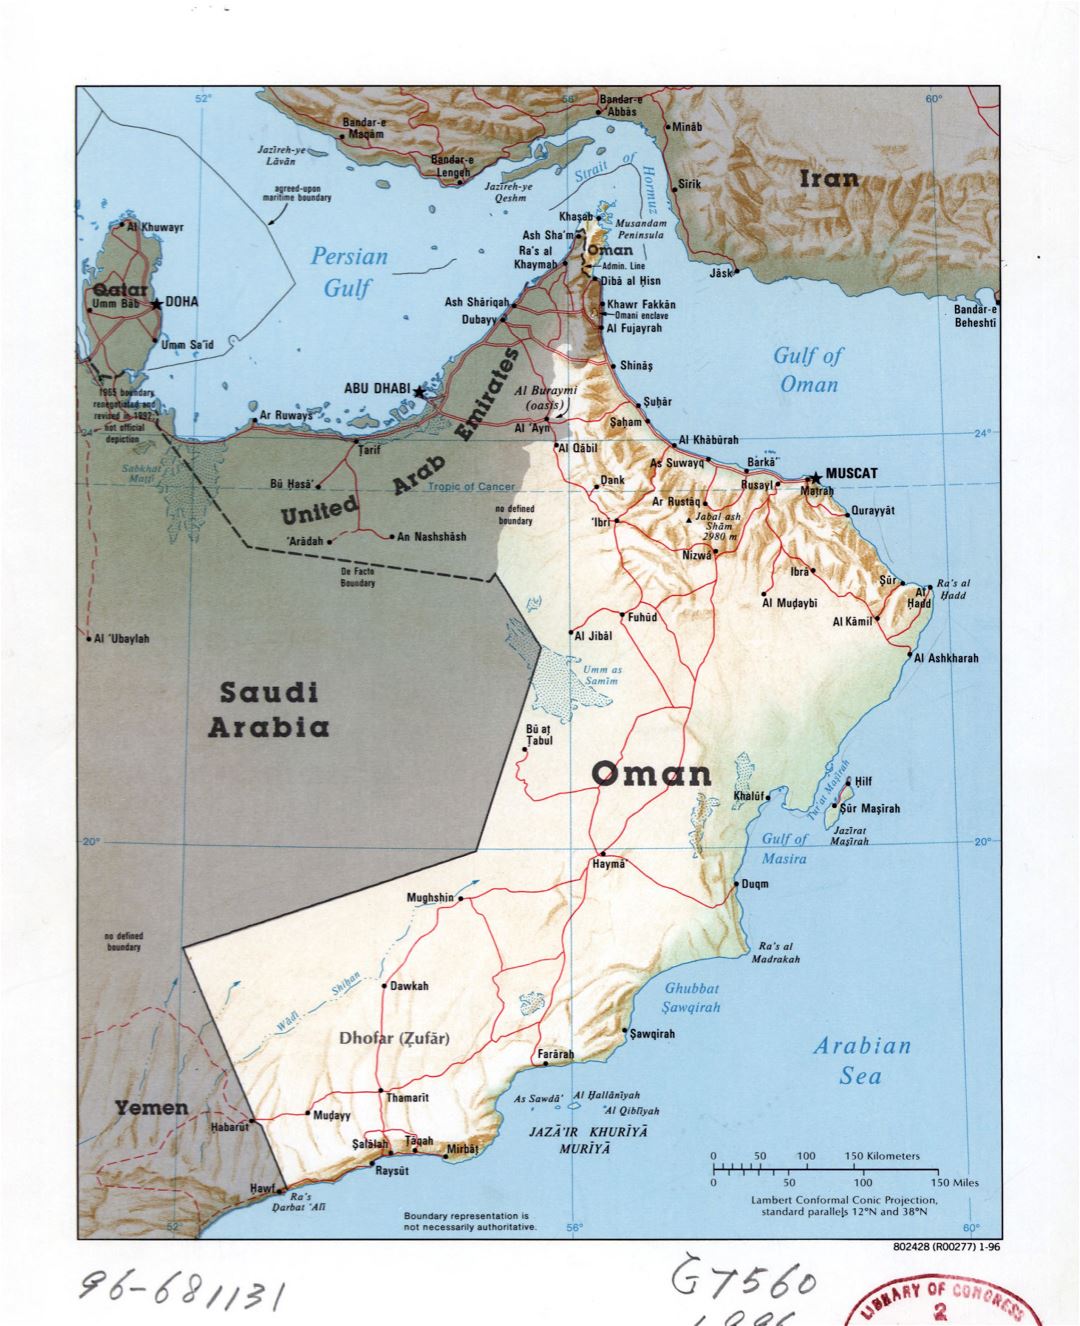 Grande detallado mapa político de Omán con relieve, carreteras y principales ciudades - 1996